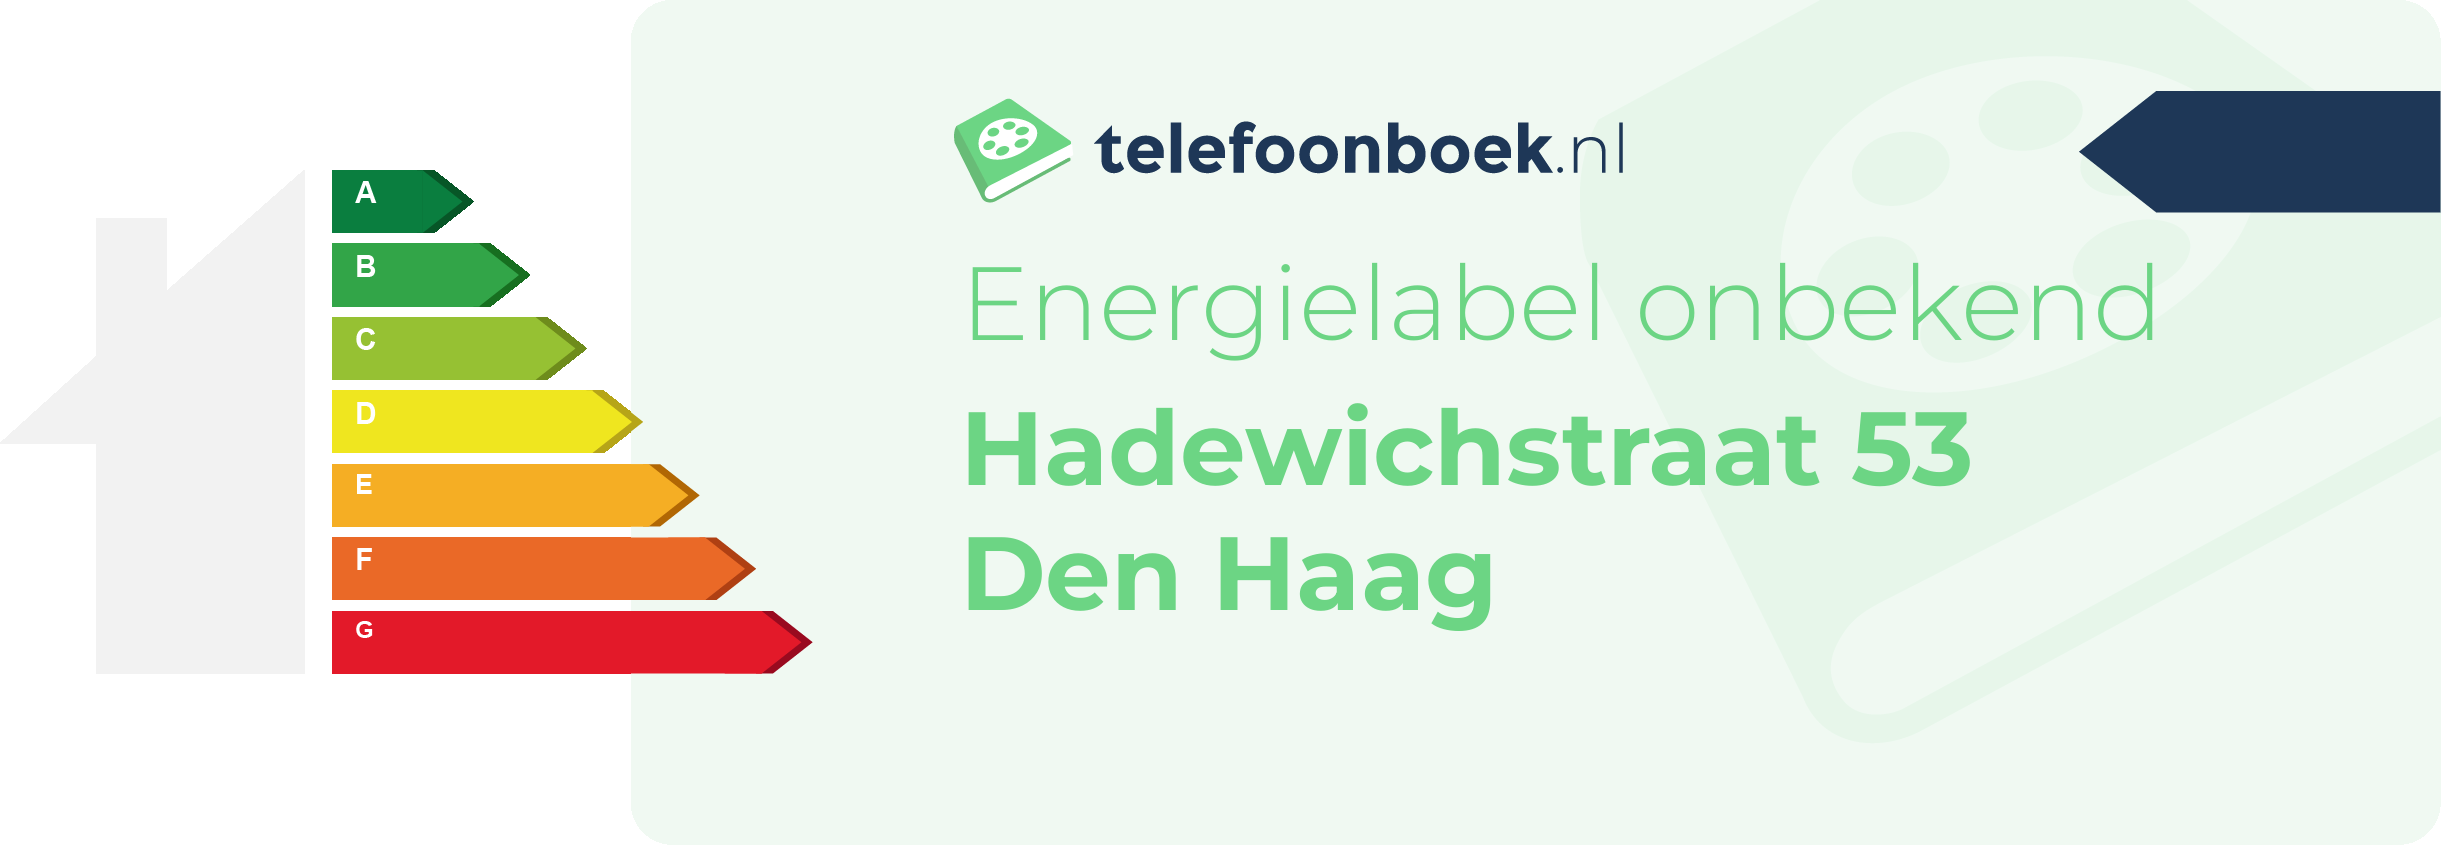 Energielabel Hadewichstraat 53 Den Haag